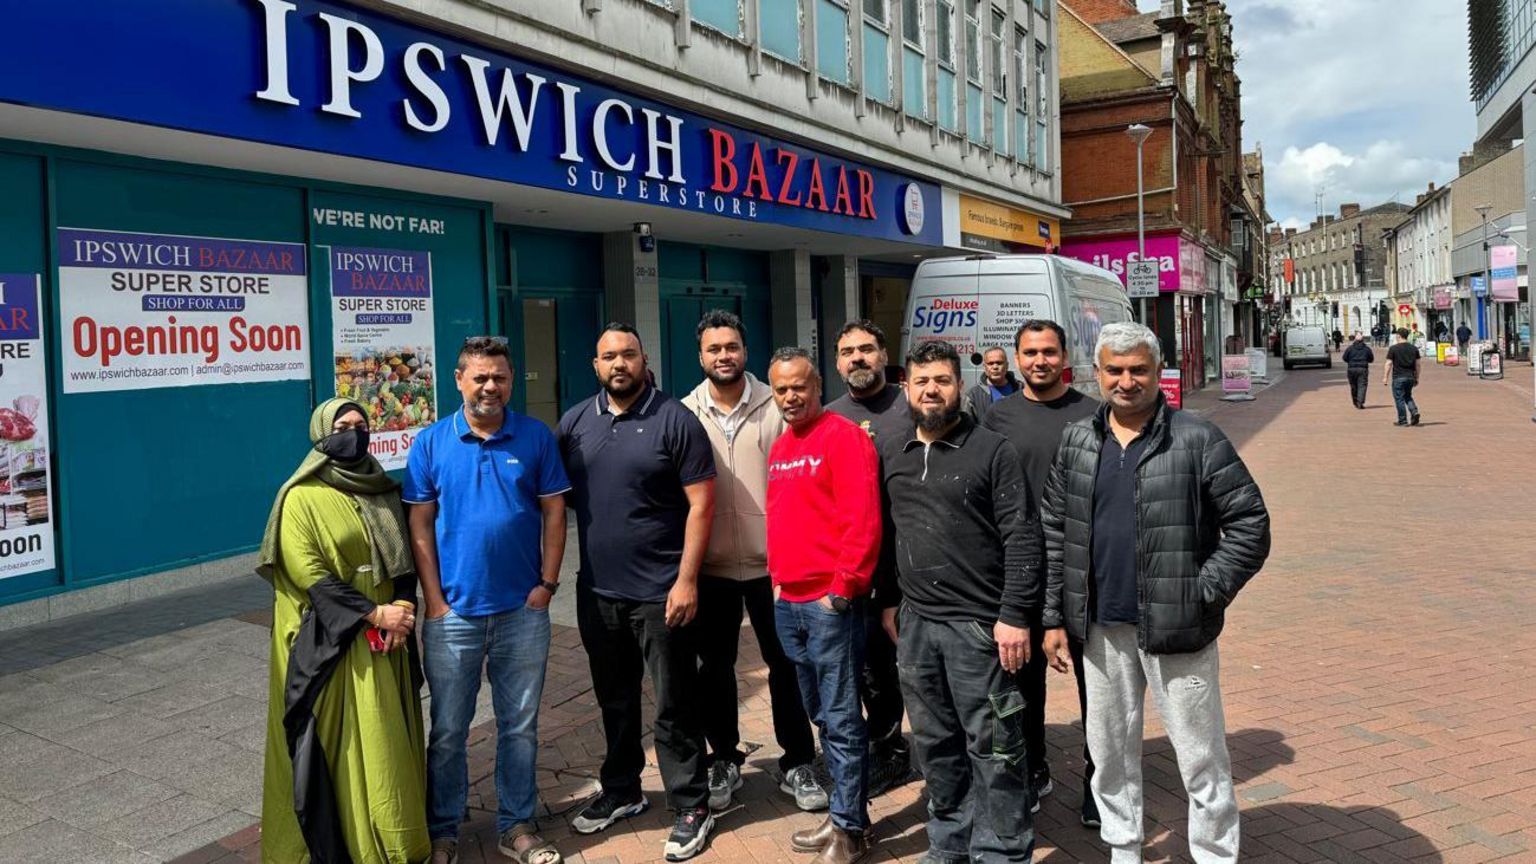 Ipswich Bazaar owners and workers